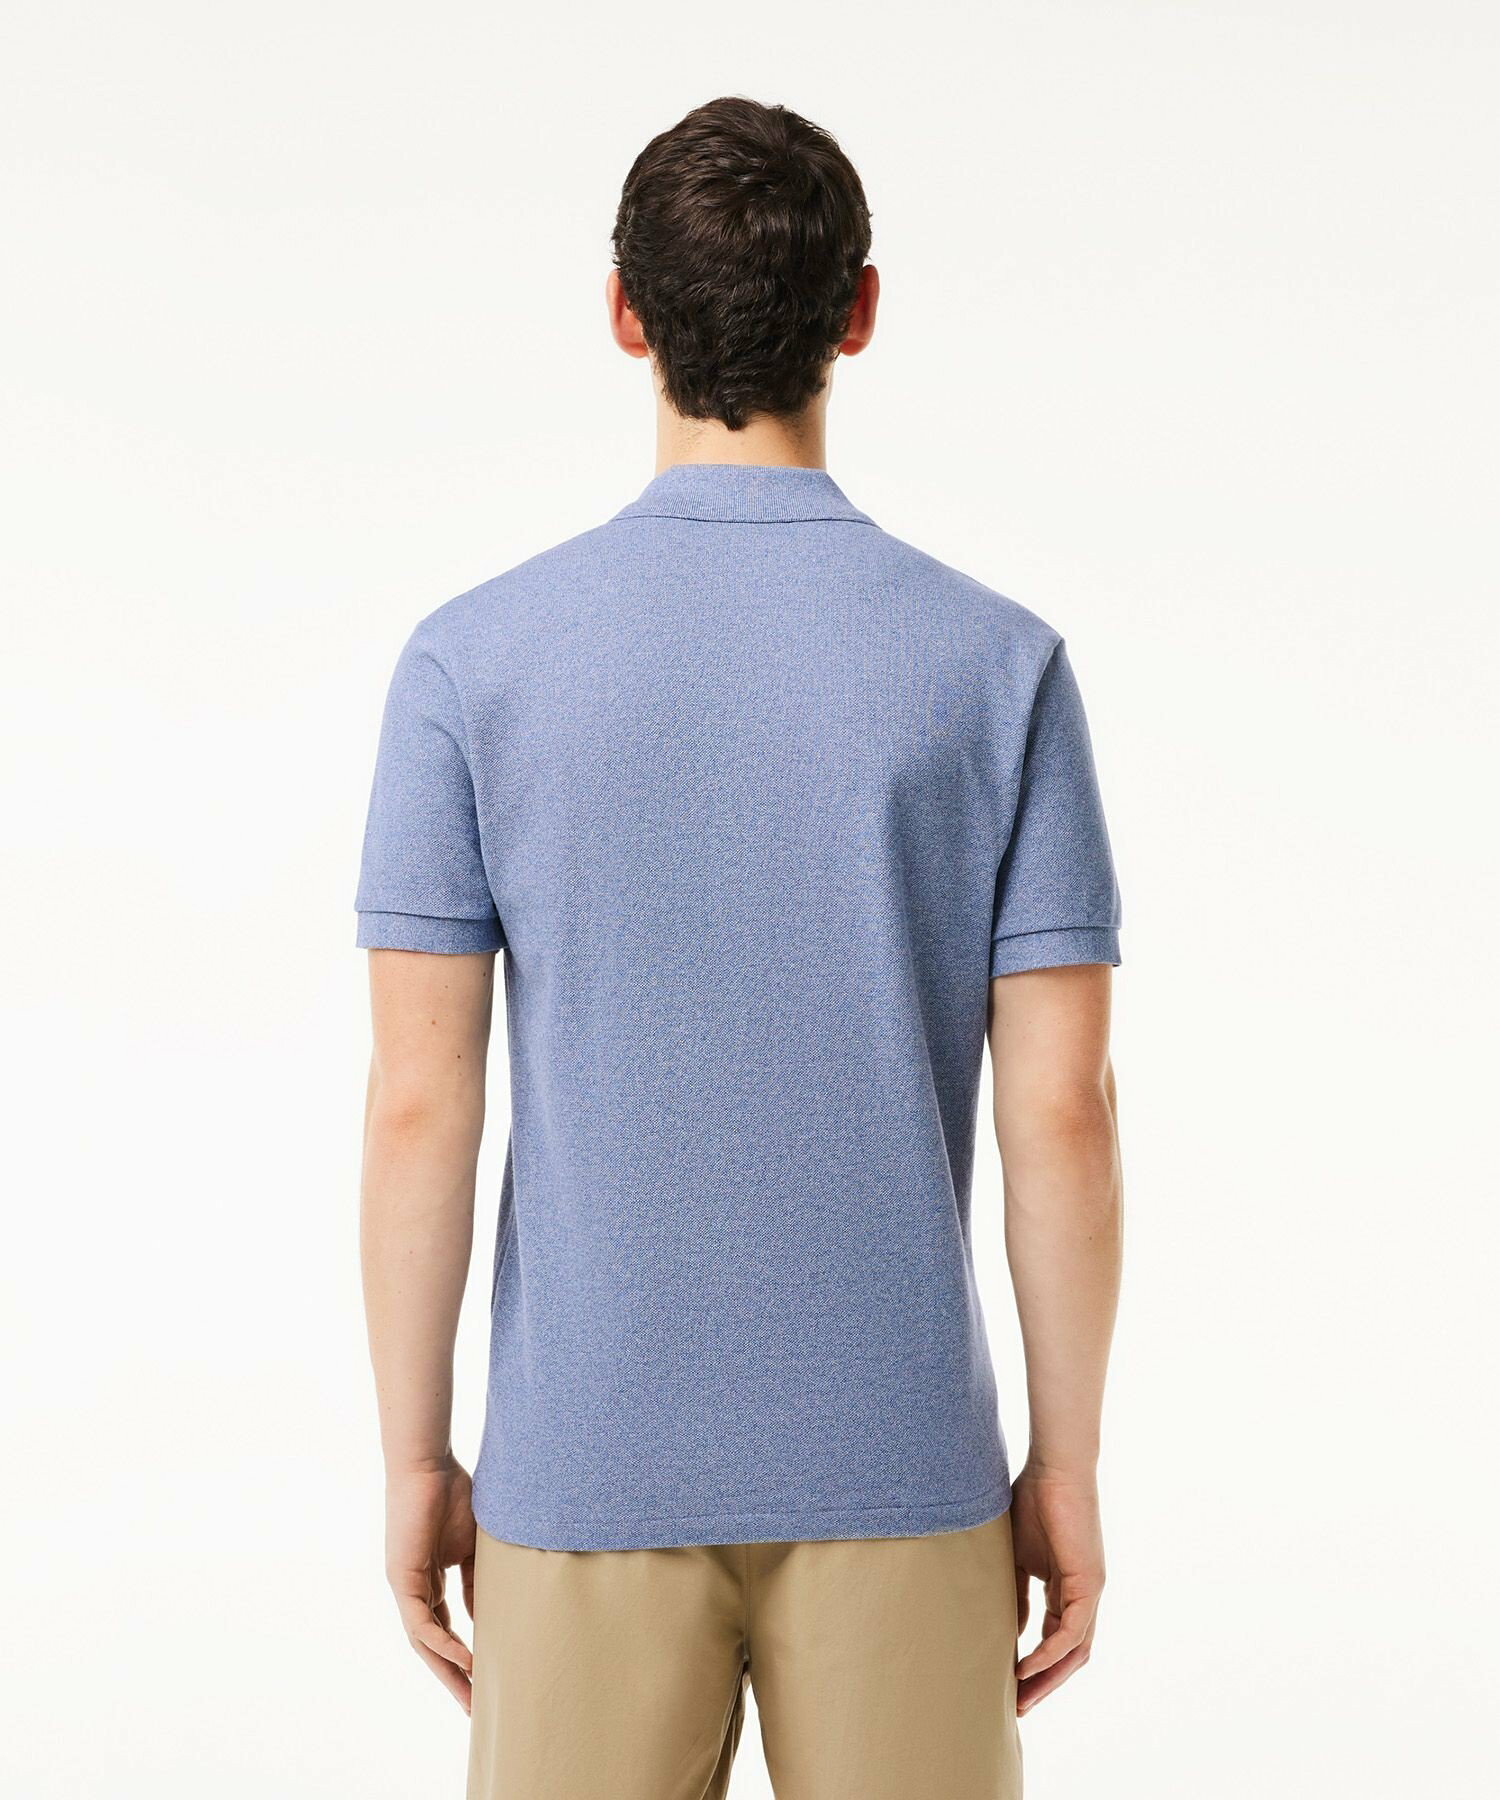 『L1264』定番半袖ポロシャツ(杢糸)